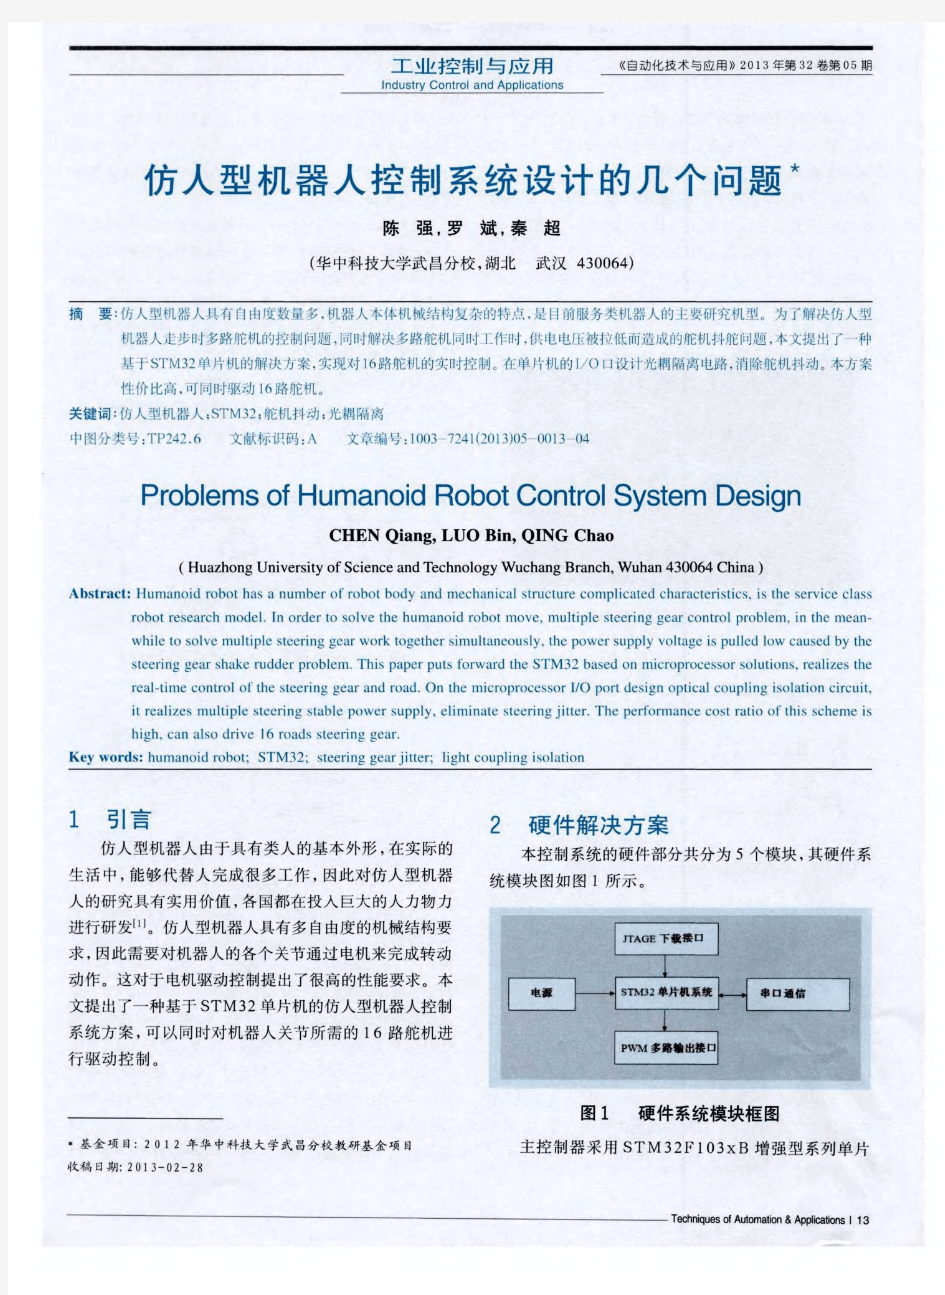 仿人型机器人控制系统设计的几个问题